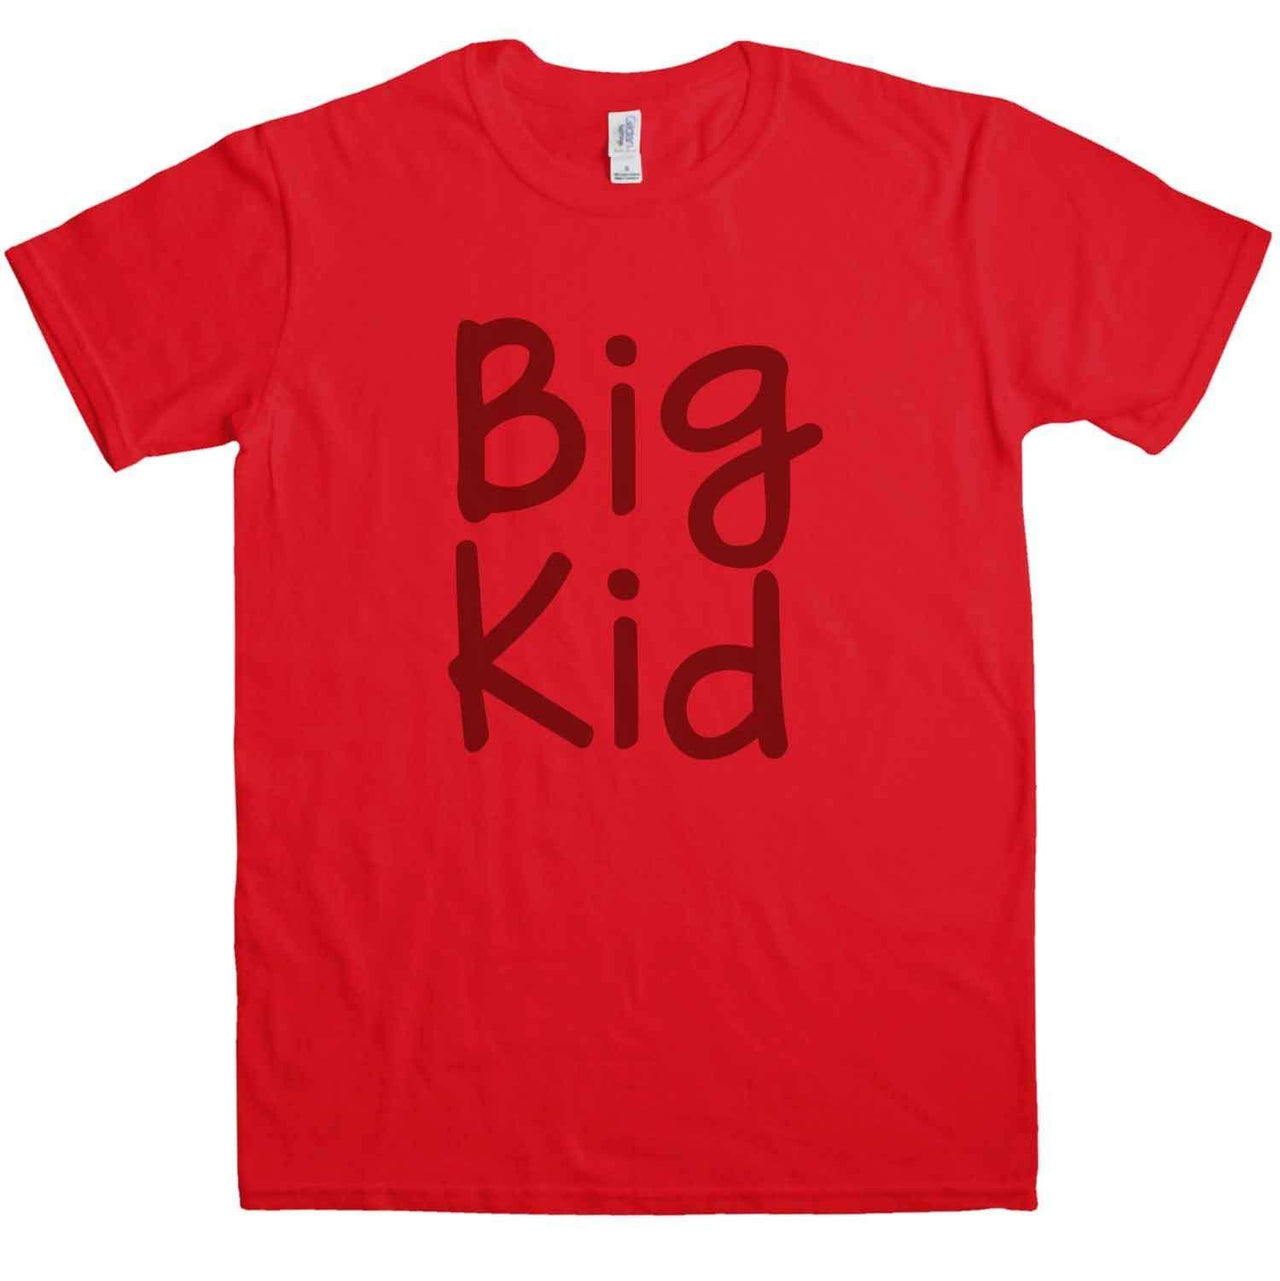 Big Kid Little Kid - Adult T Shirt